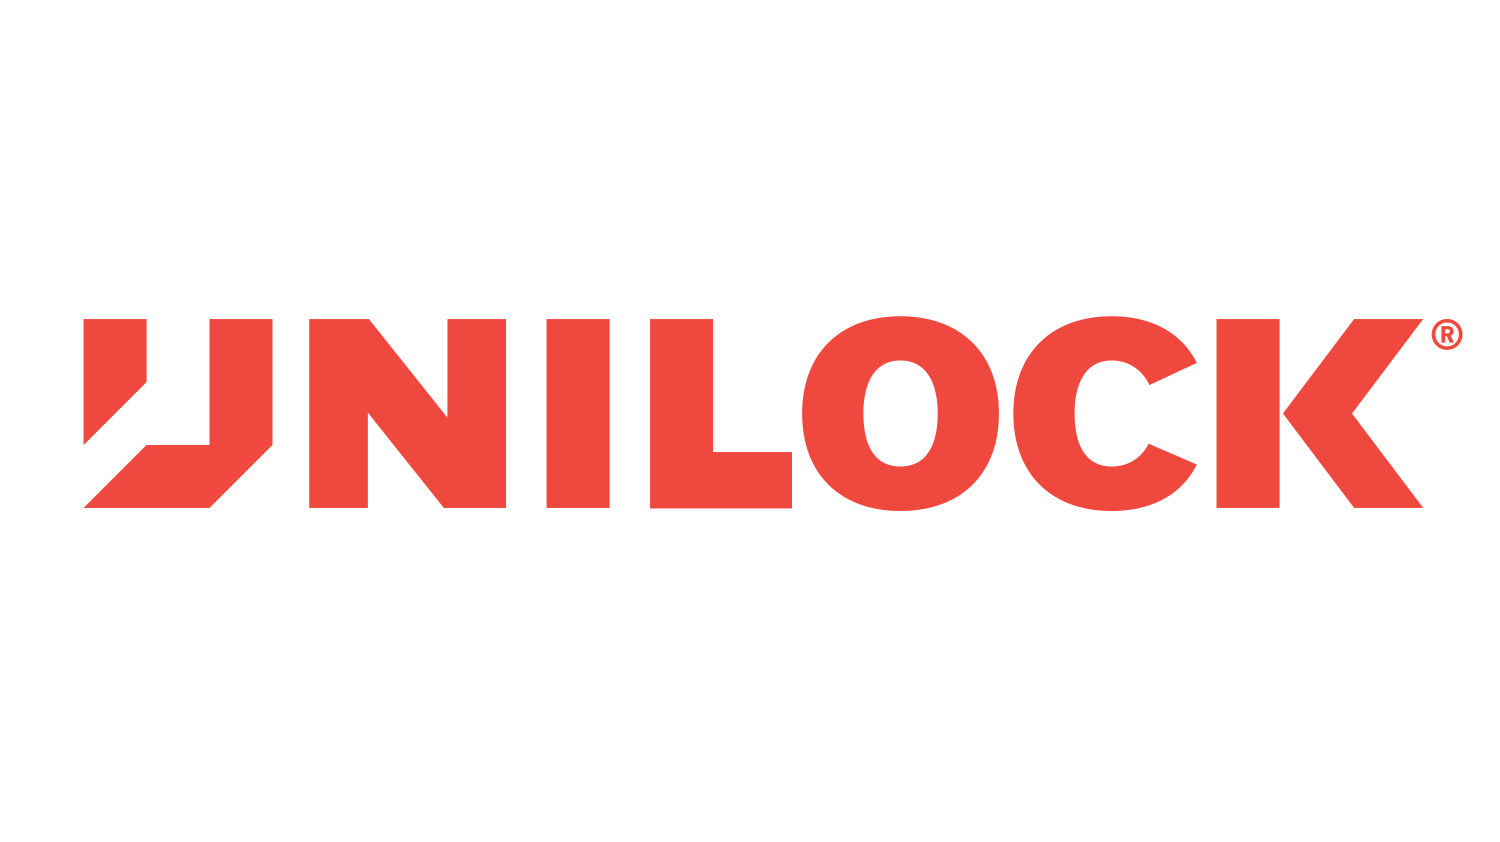 Unilock-Logotype-Primary.png